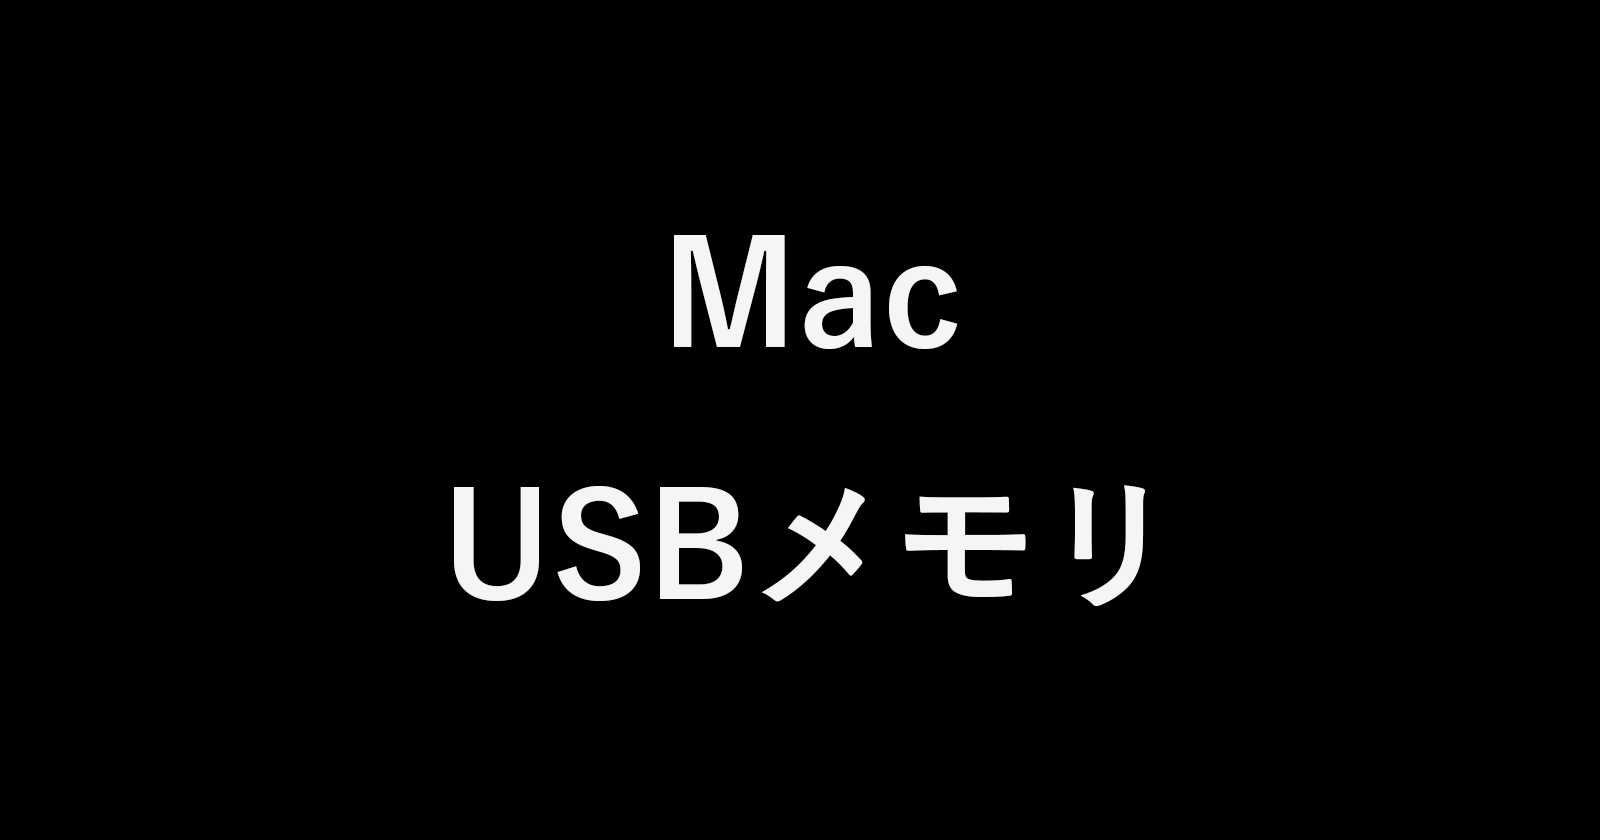 mac usb flash drive